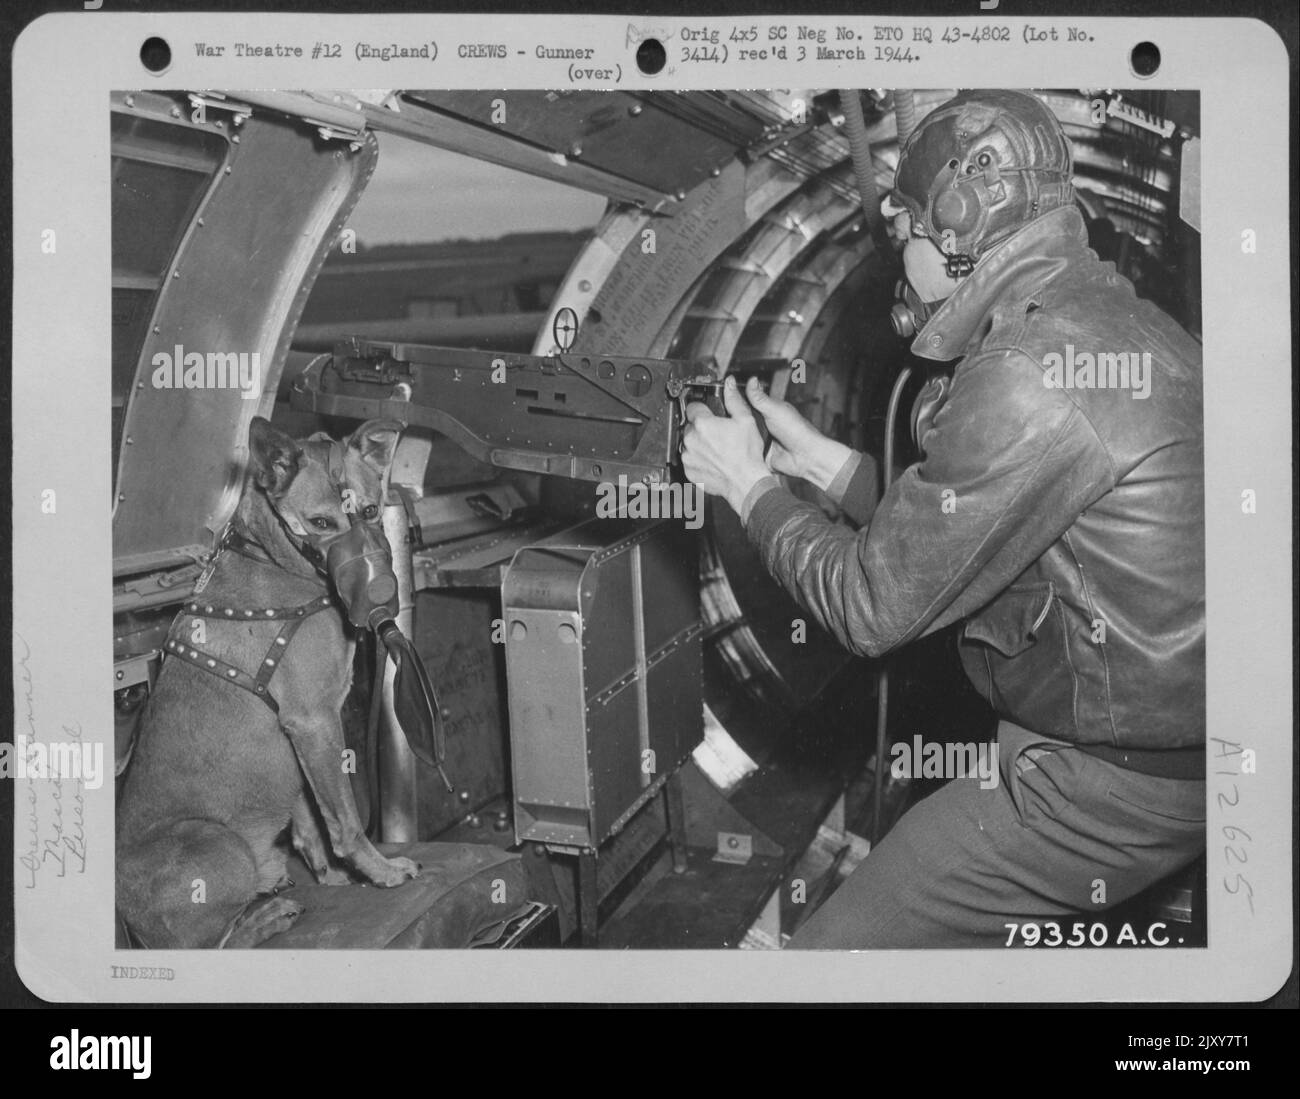 'Mister' The PET Mascot di S/Sgt. Rogers di Hollywood, Cal., Gunner su Un Boeing B-17 è mostrato qui con la sua maschera di ossigeno durante Una missione sul territorio di Enemy. Ha partecipato a cinque missioni con il suo Maestro. Inghilterra, 1 luglio 1943. Foto Stock